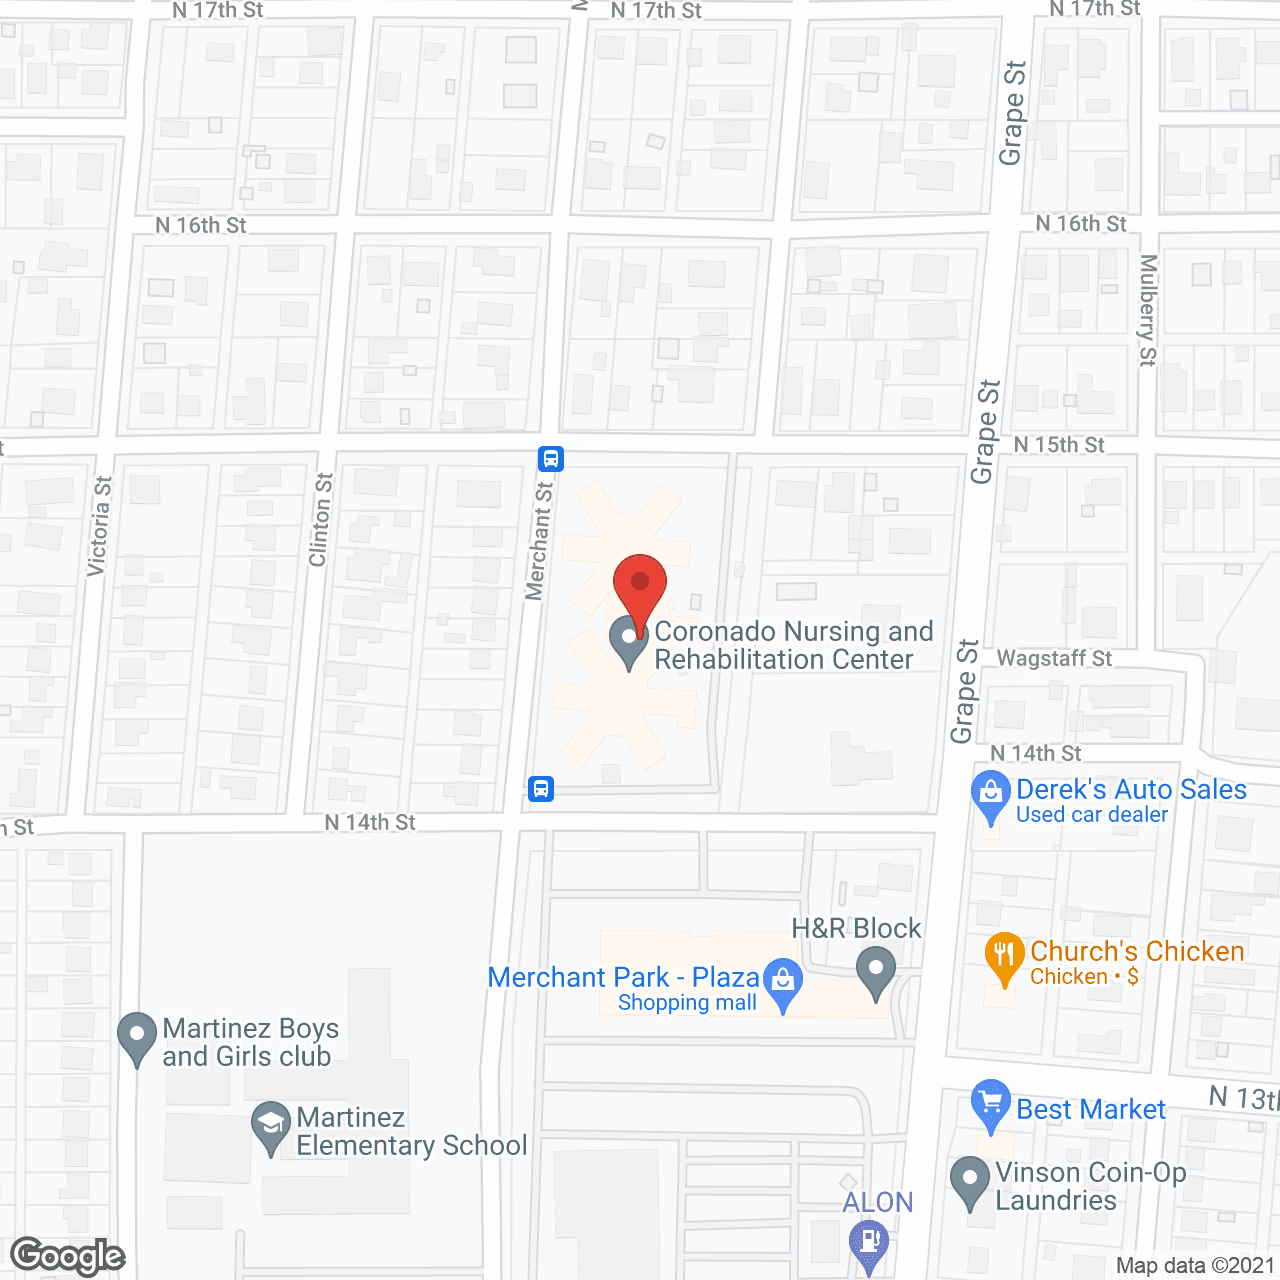 Coronado Nursing Center in google map